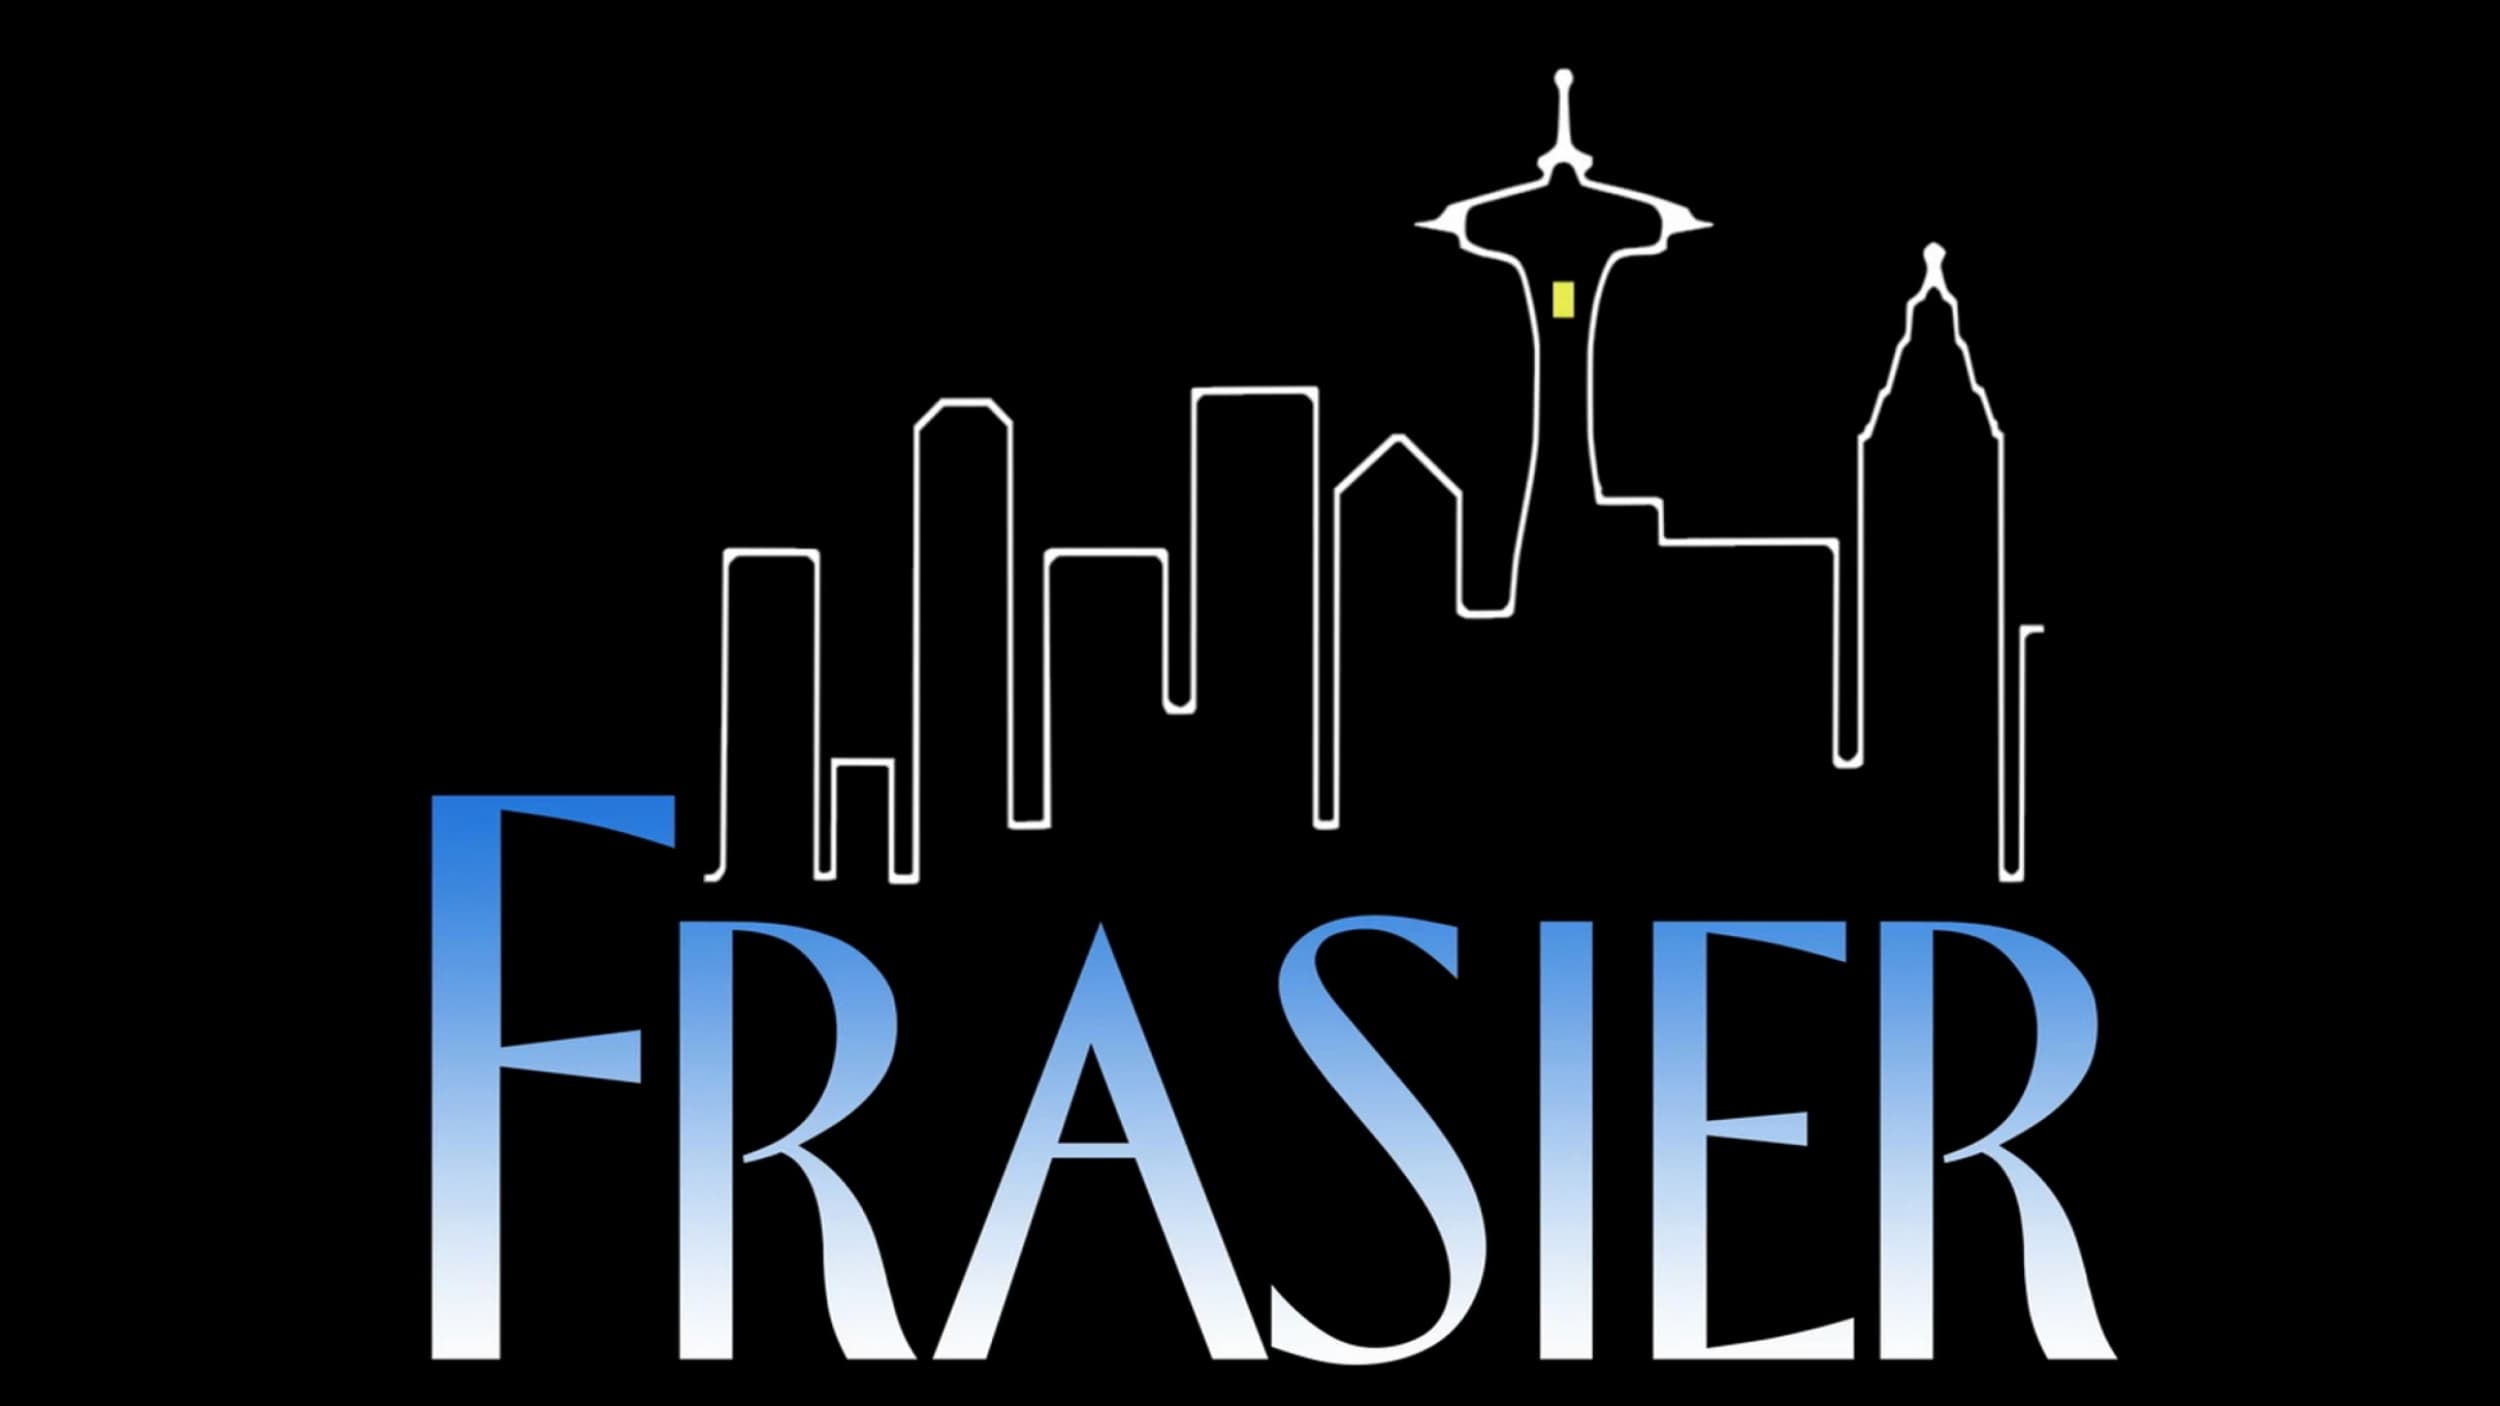 Frasier - Season 11 Episode 24